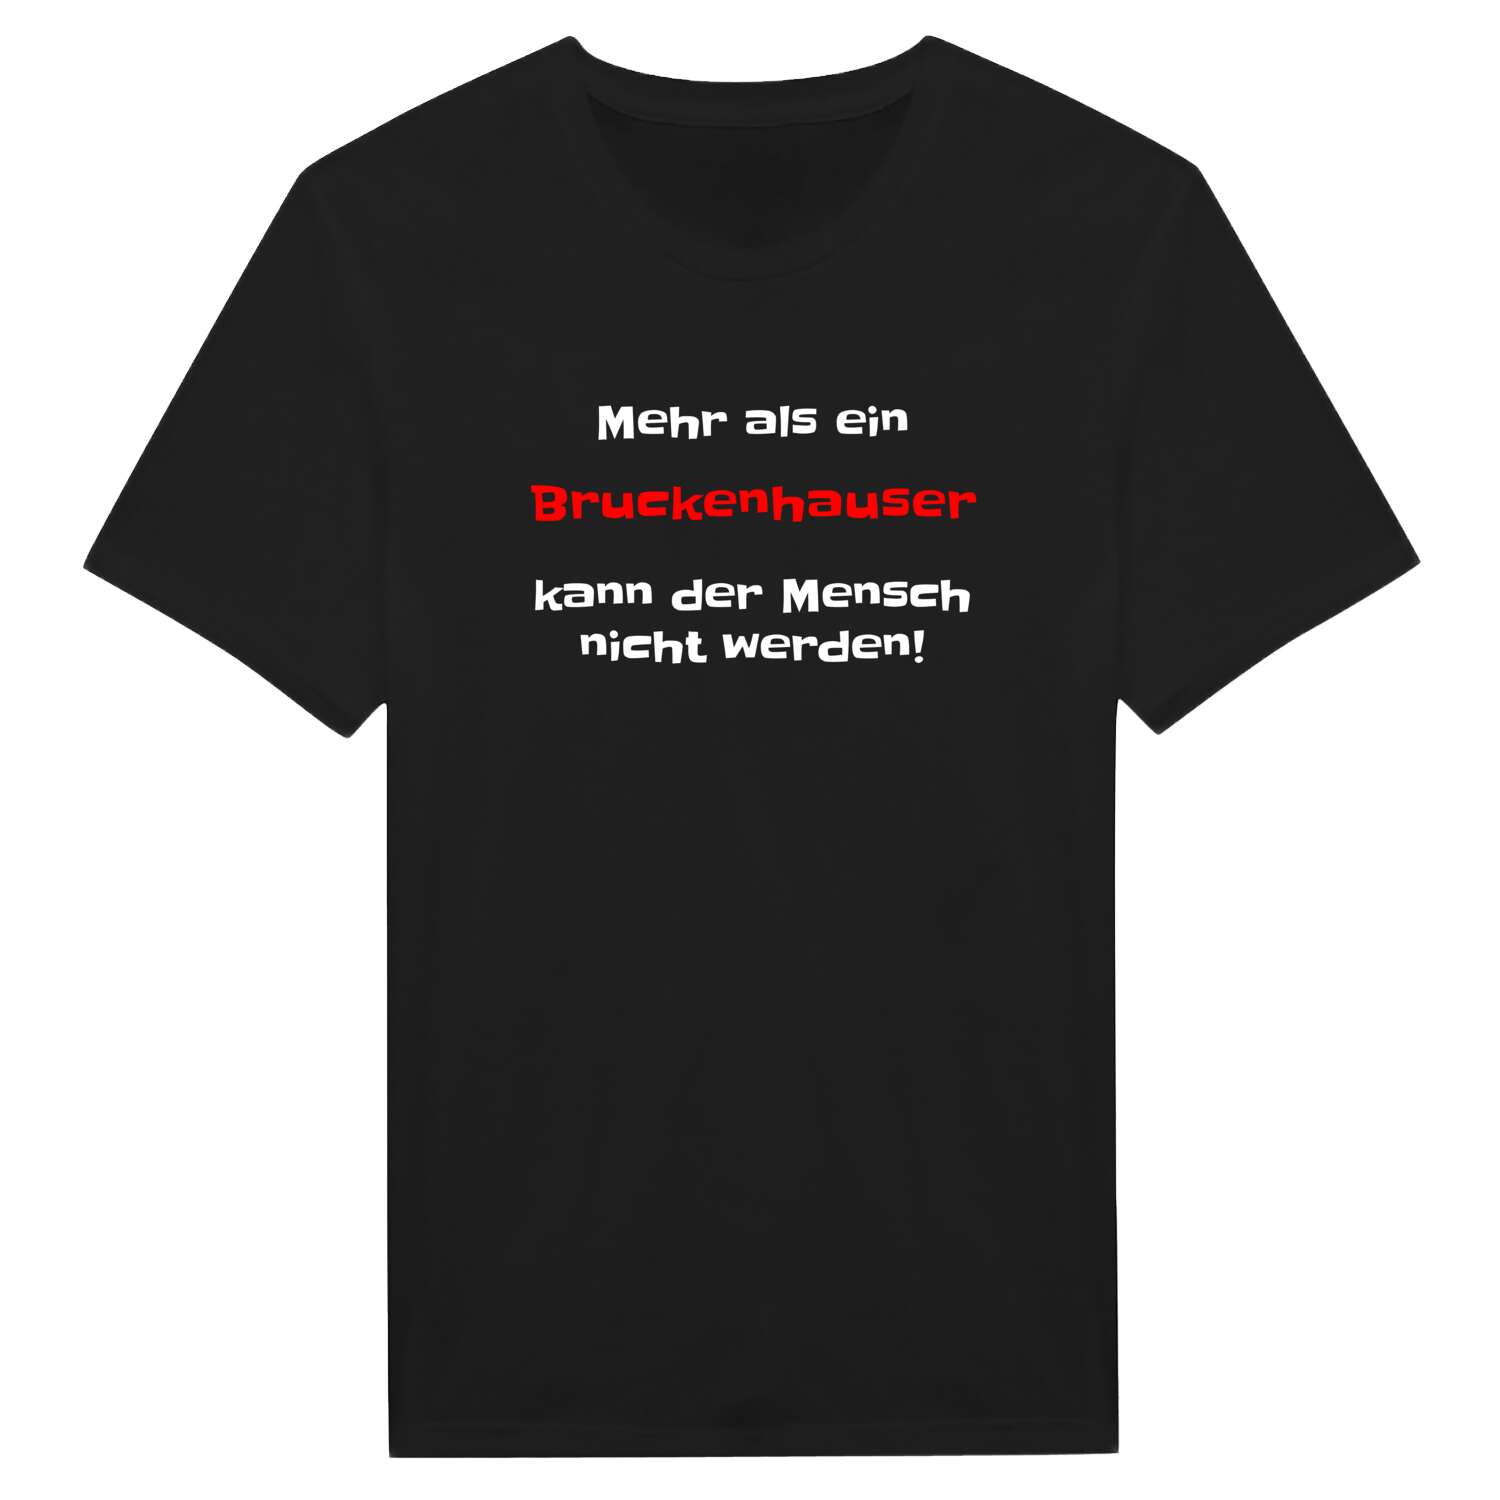 Bruckenhaus T-Shirt »Mehr als ein«